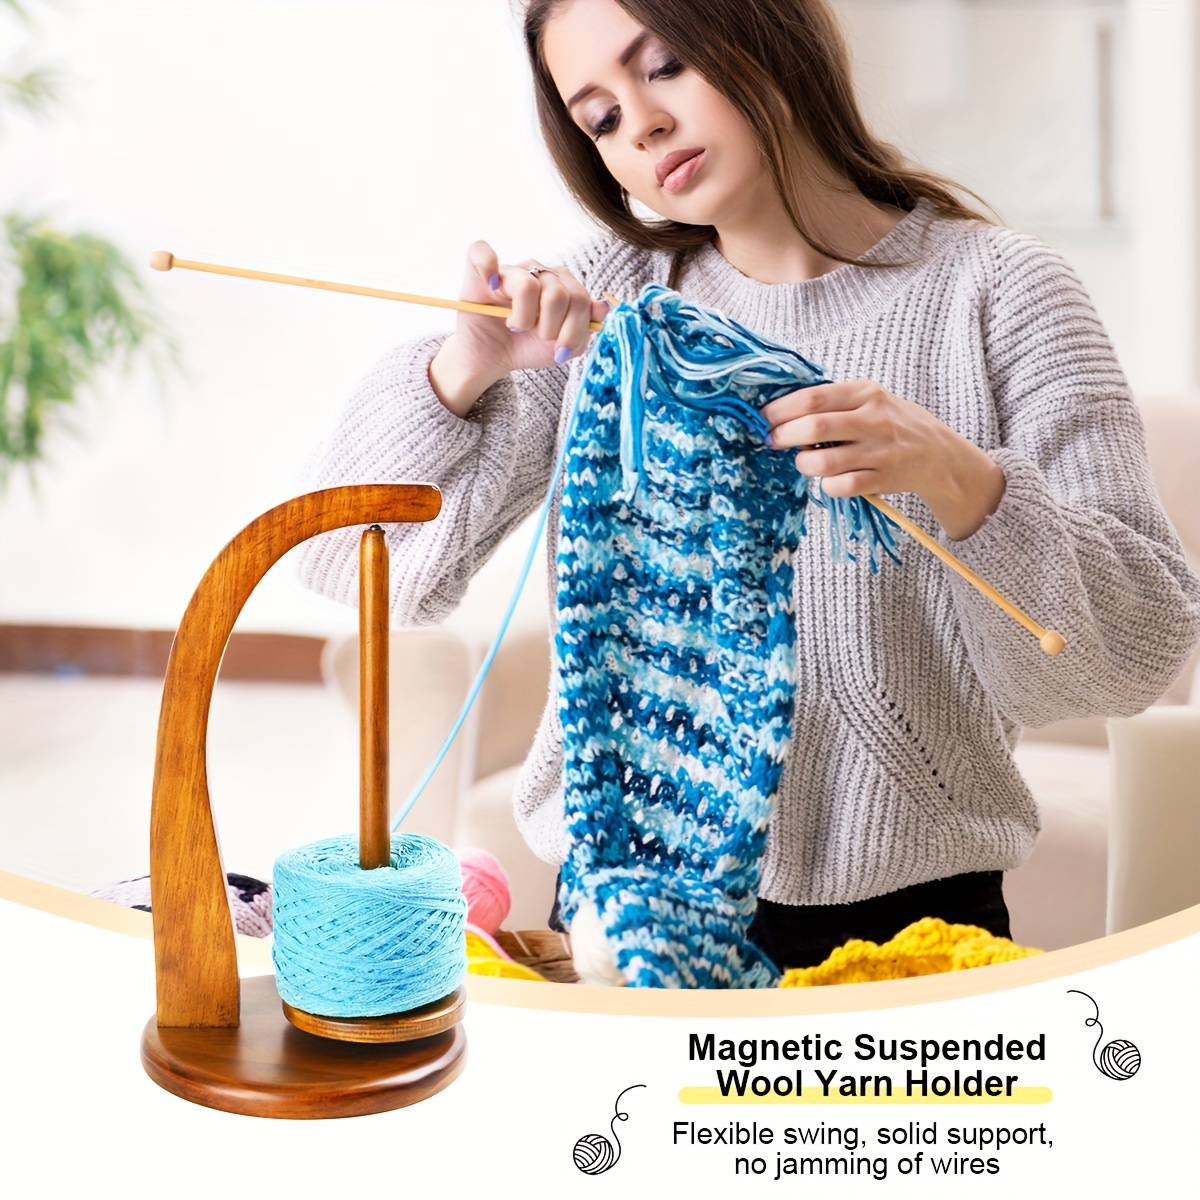 Yarn Holder Wooden Spinning Knitting Tools Beginner Crochet